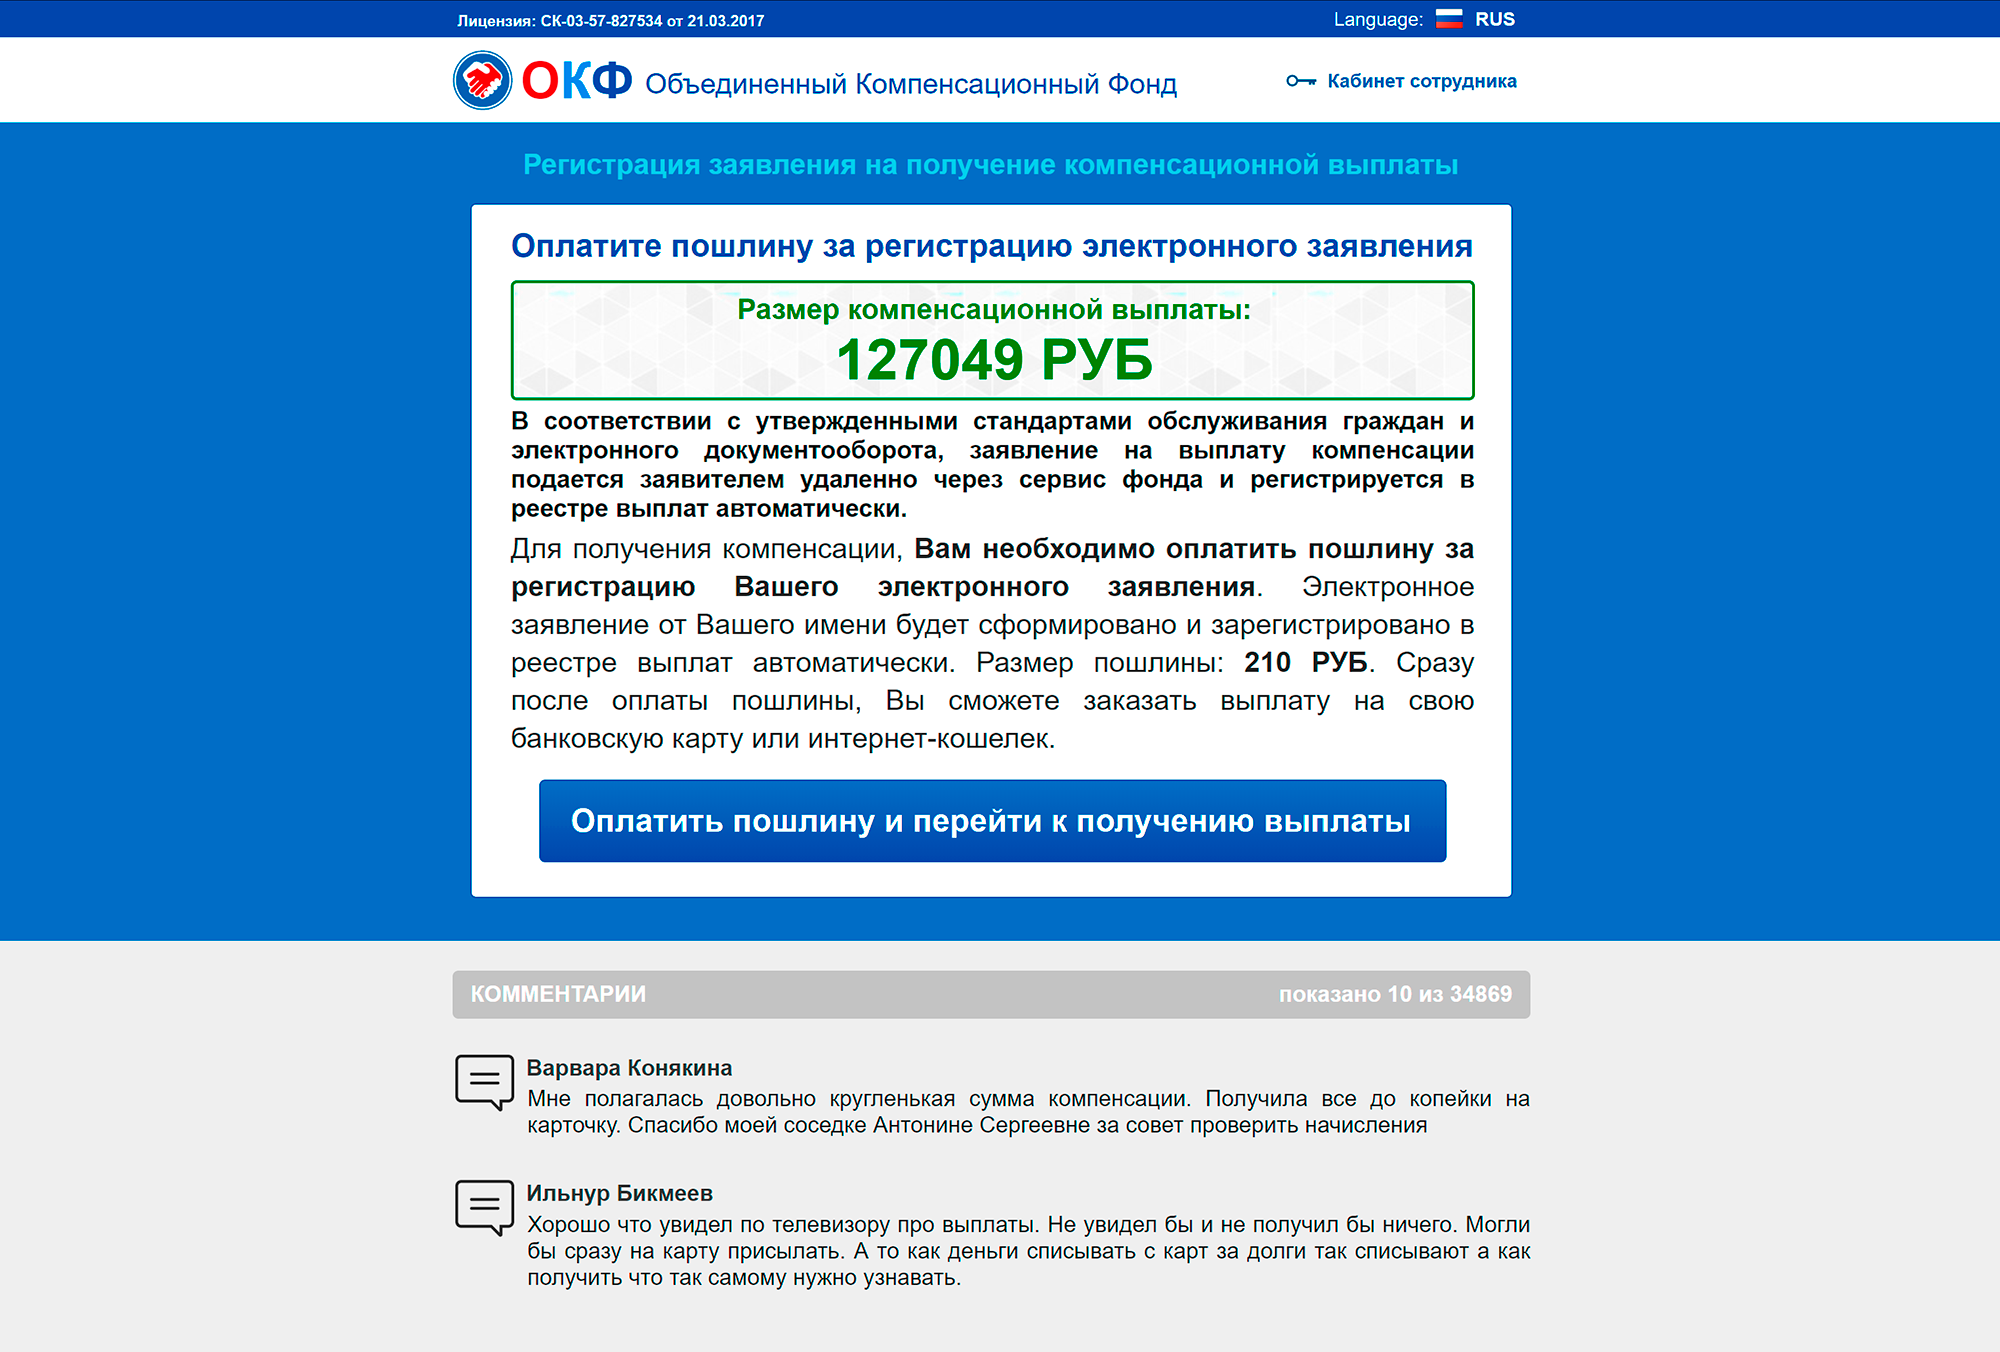 Конечно, придется заплатить 210 рублей, но это же копейки по сравнению со 127 тысячами. Разница тоже в 600 раз